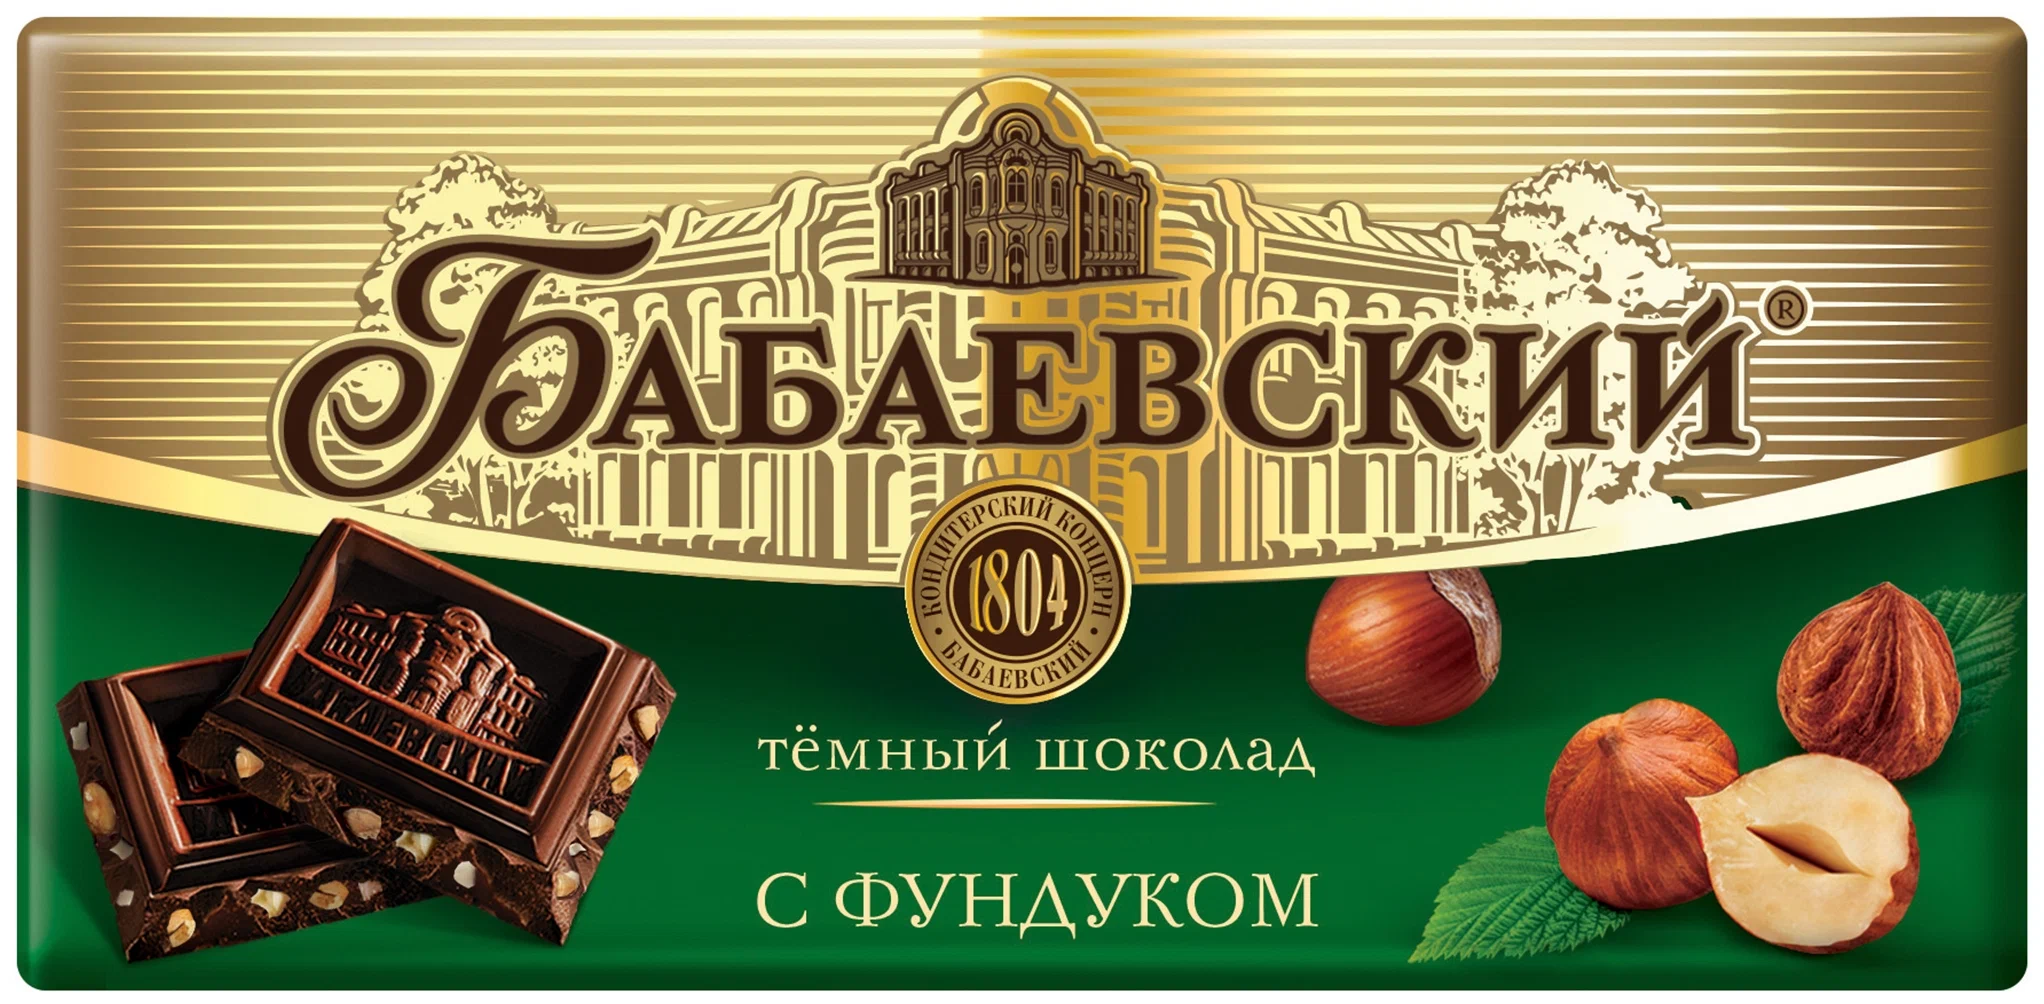 Бабаевский "С фундуком" - вид шоколада: темный